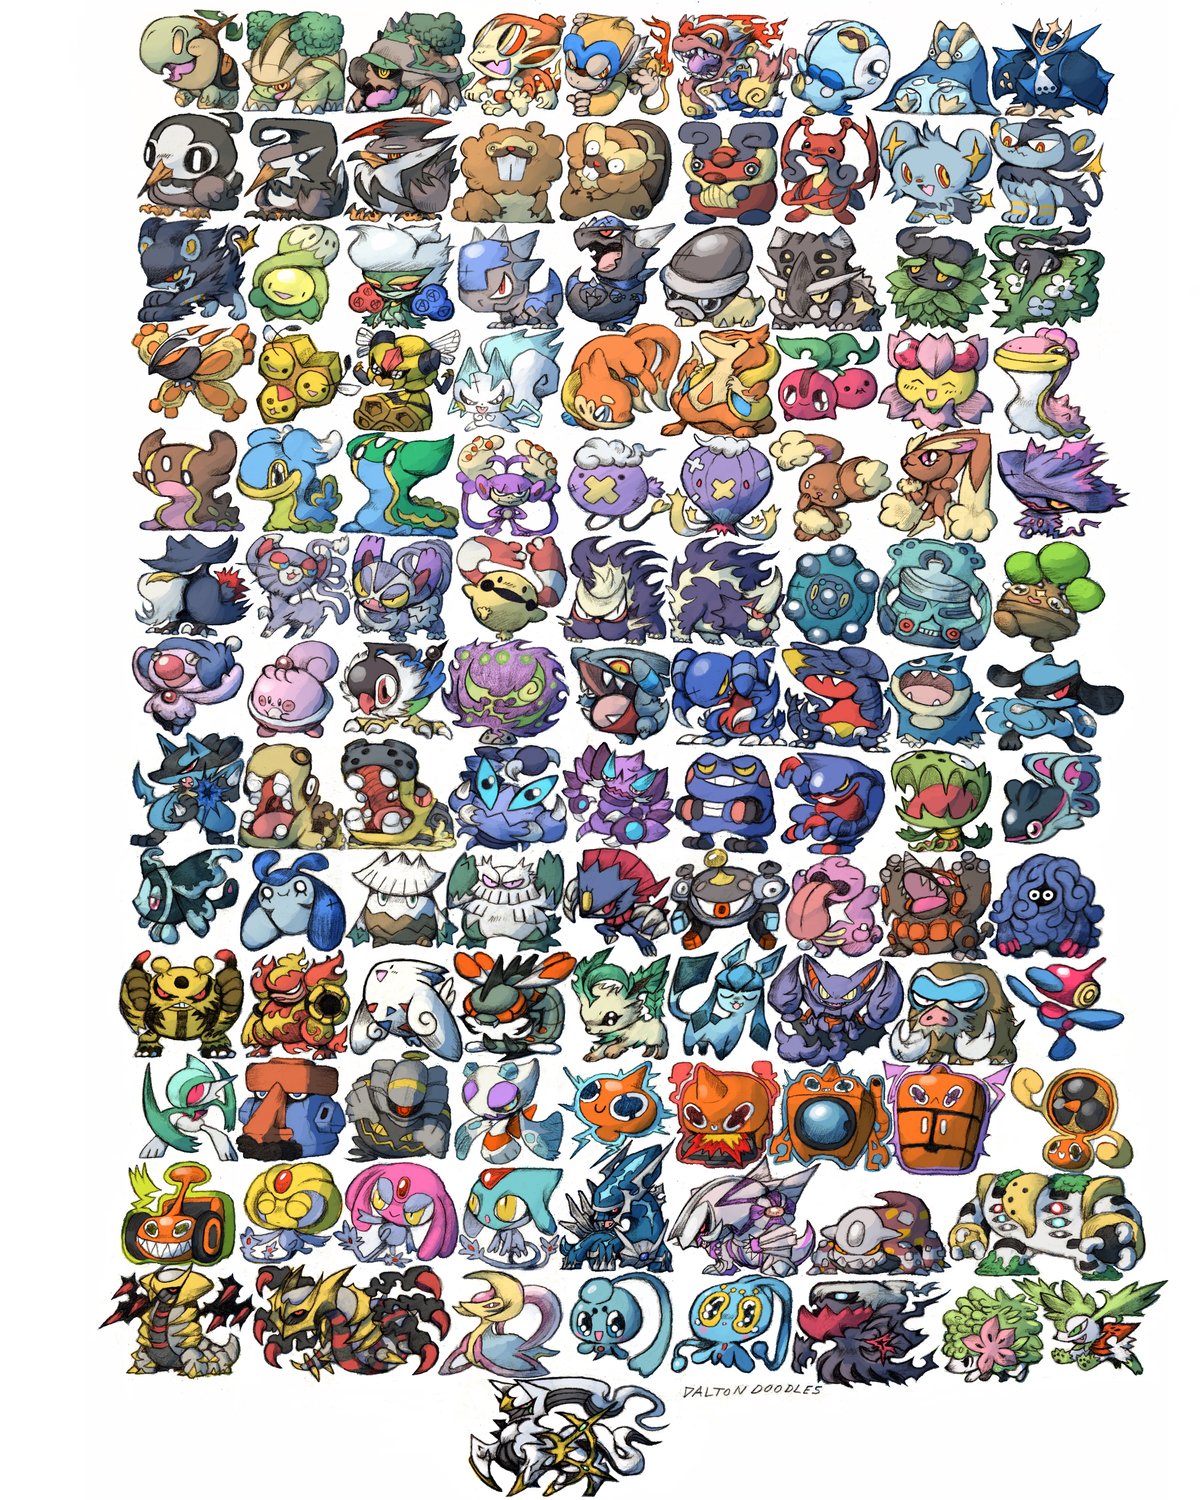 Image of GEN 4 Pokemon Poster